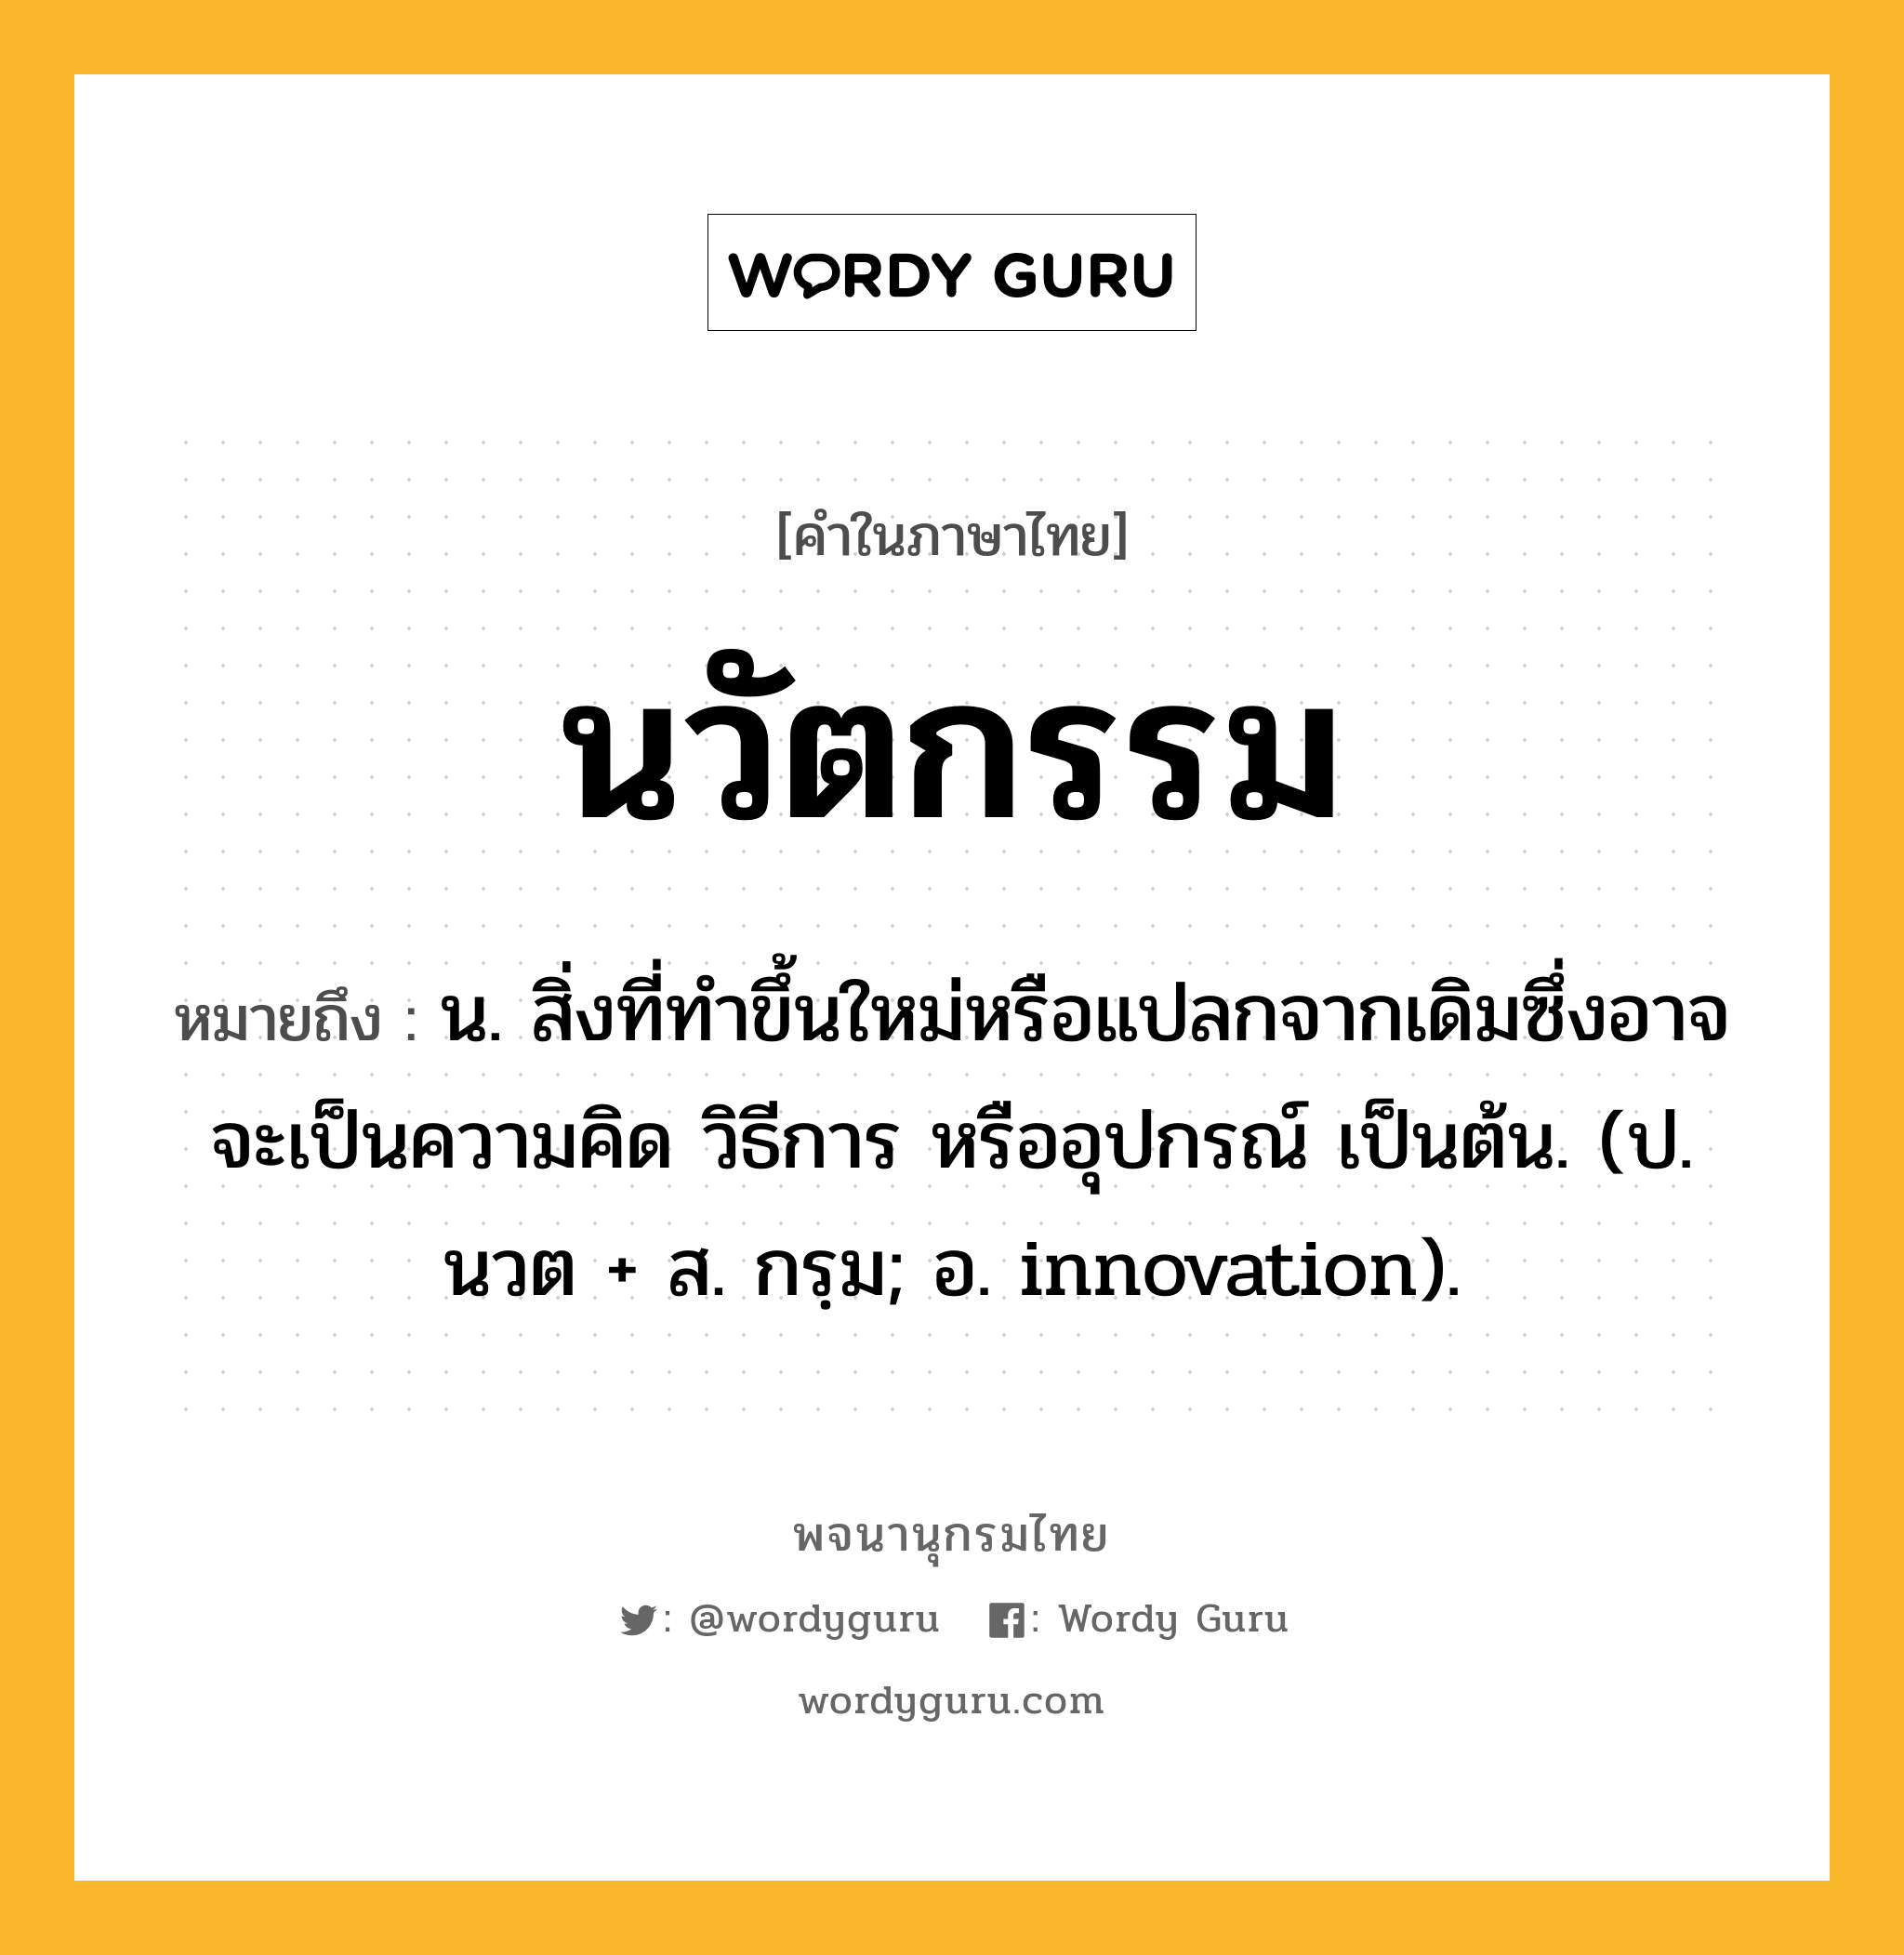 นวัตกรรม หมายถึงอะไร?, คำในภาษาไทย นวัตกรรม หมายถึง น. สิ่งที่ทำขึ้นใหม่หรือแปลกจากเดิมซึ่งอาจจะเป็นความคิด วิธีการ หรืออุปกรณ์ เป็นต้น. (ป. นวต + ส. กรฺม; อ. innovation).